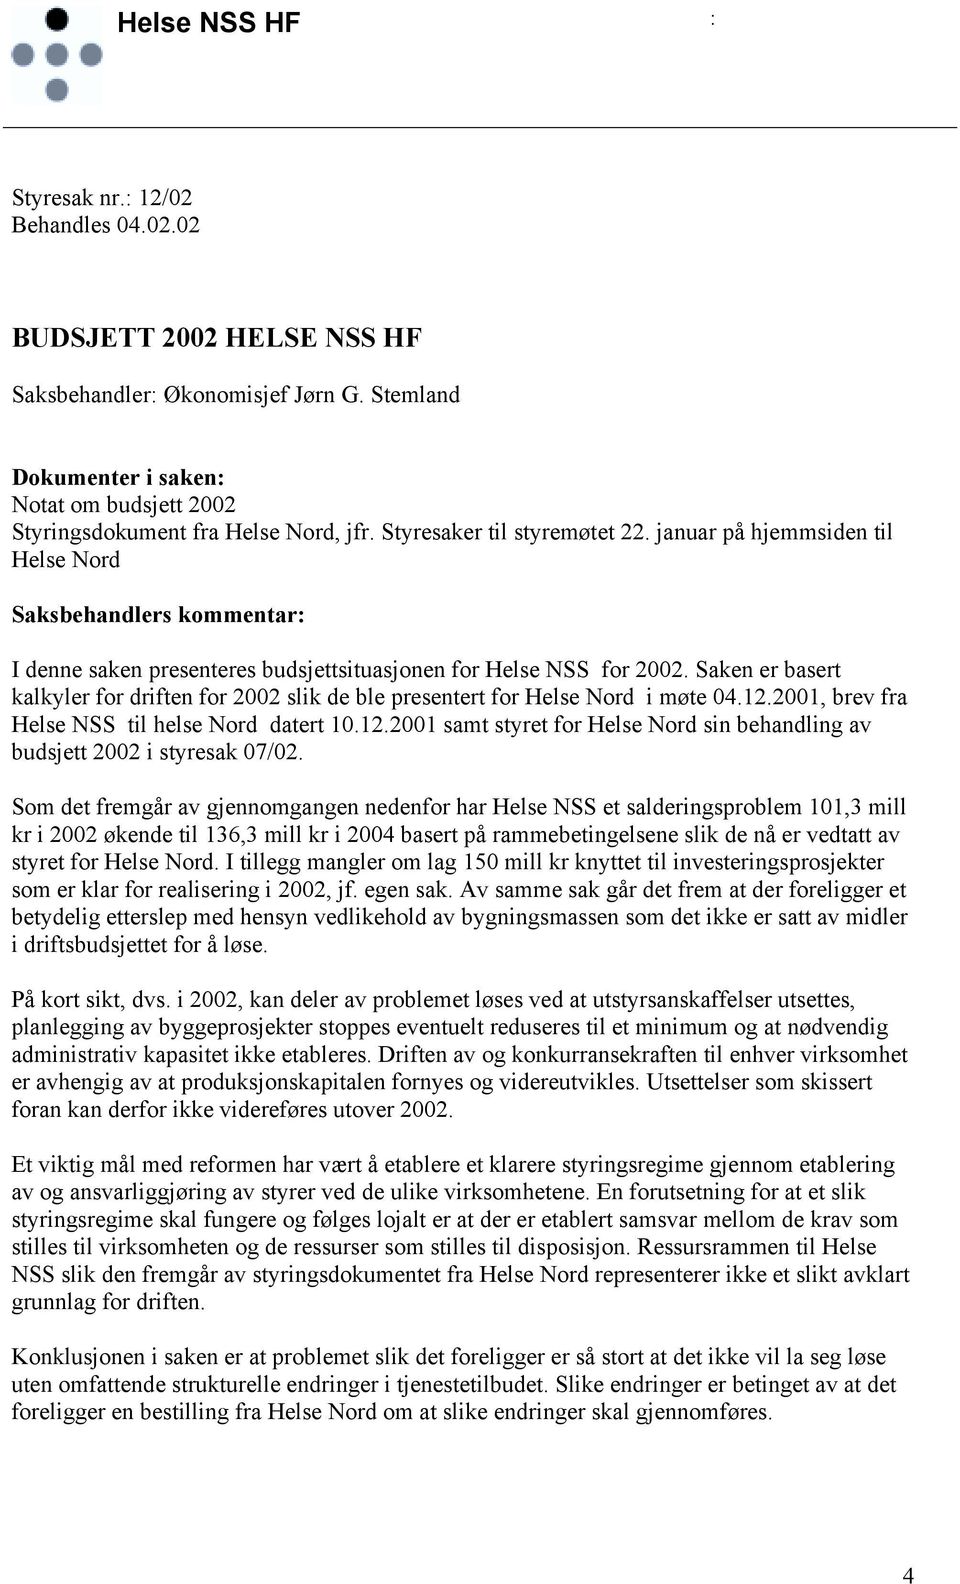 Saken er basert kalkyler for driften for 2002 slik de ble presentert for Helse Nord i møte 04.12.2001, brev fra Helse NSS til helse Nord datert 10.12.2001 samt styret for Helse Nord sin behandling av budsjett 2002 i styresak 07/02.